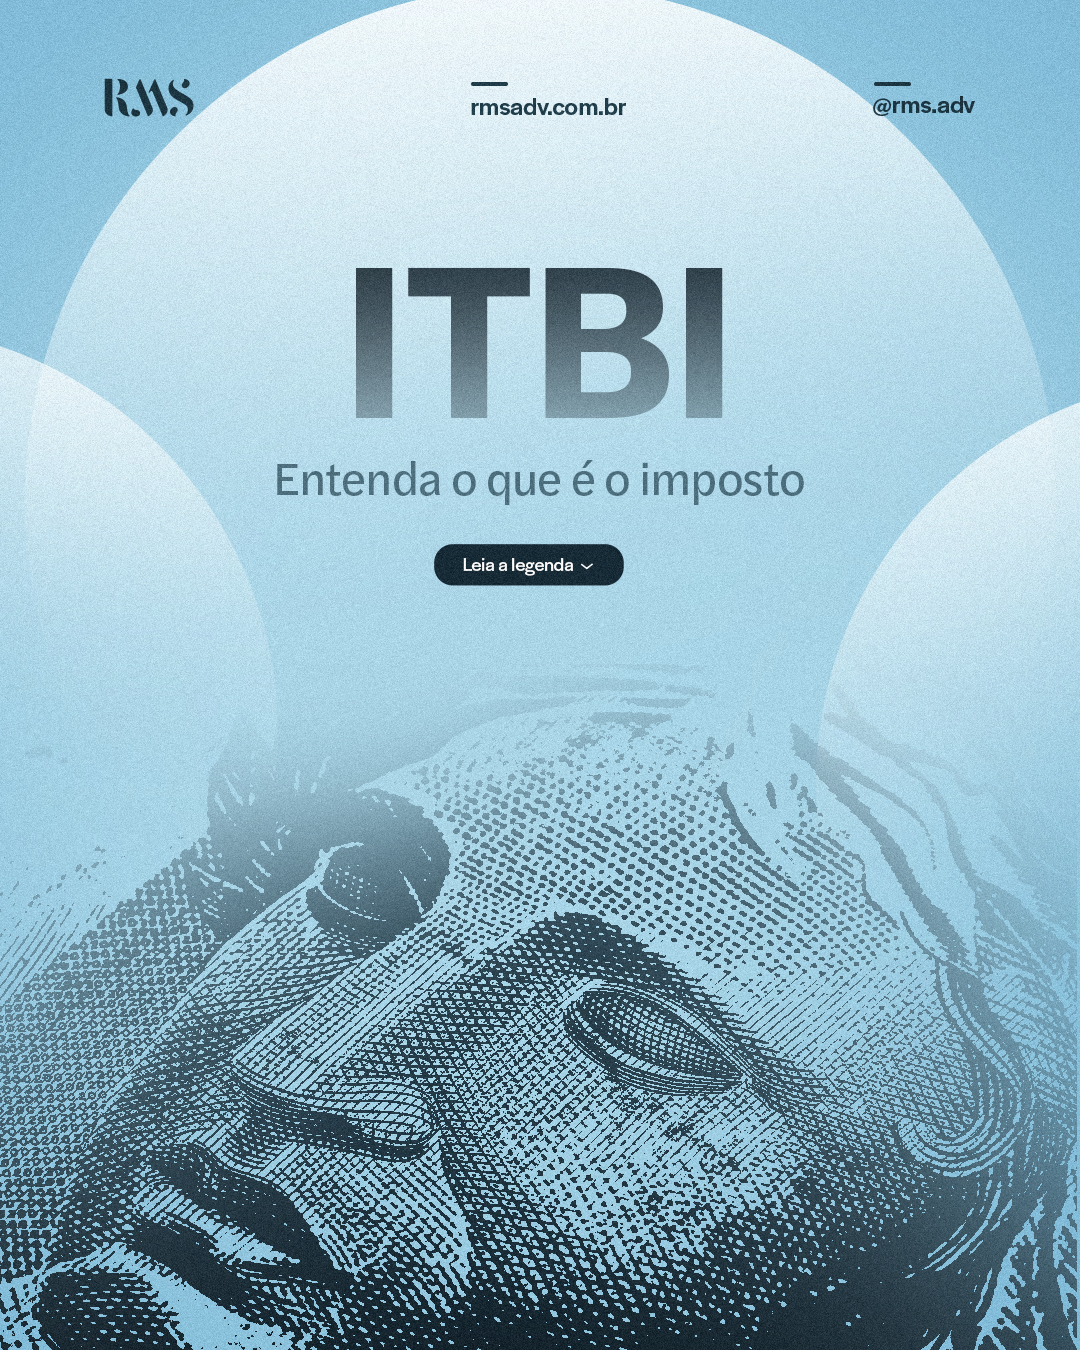 ITBI: Entenda o que é o imposto